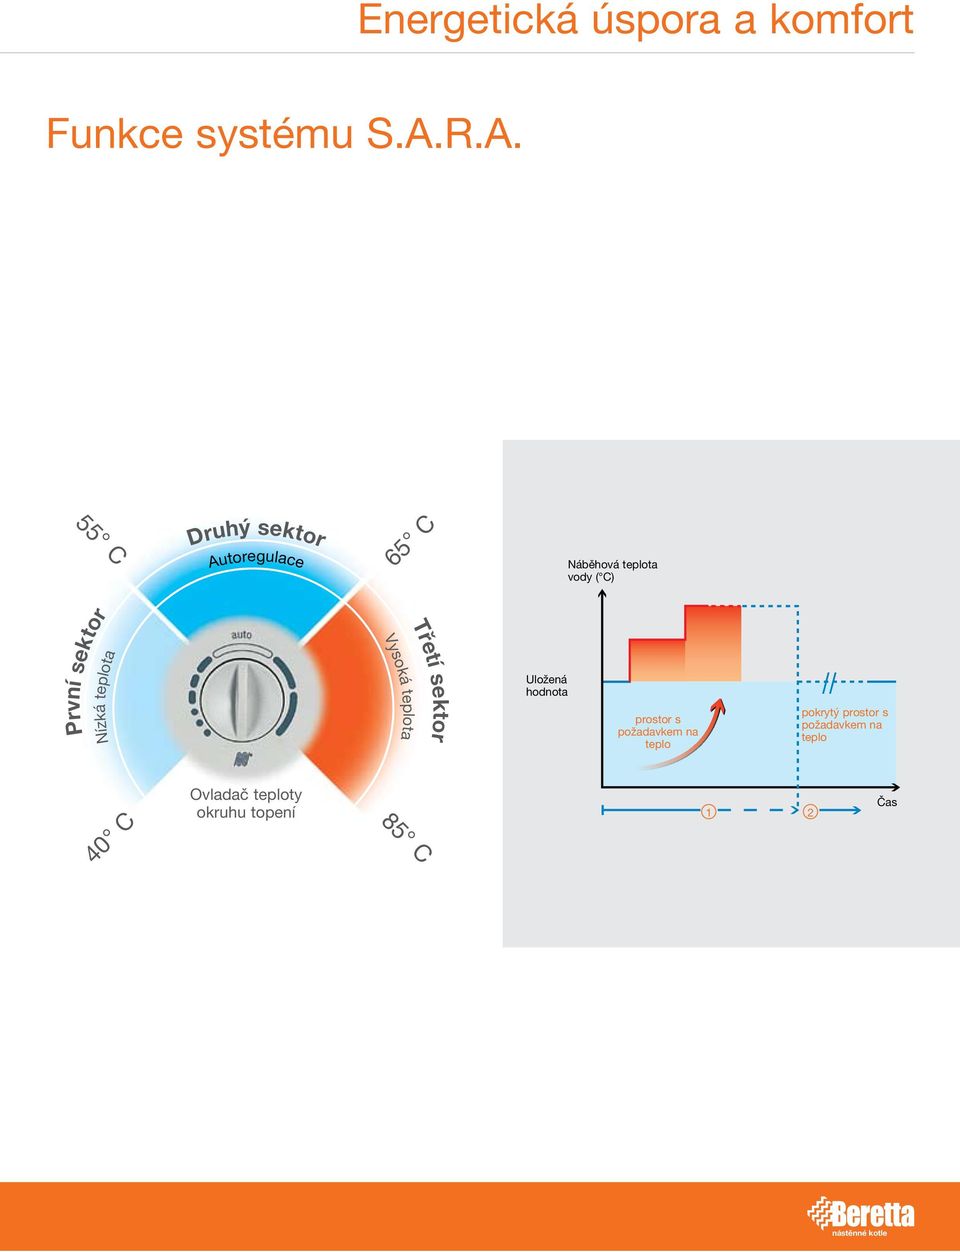 teplota vody ( C) První sektor Nízká teplota Vysoká teplota Třetí sektor